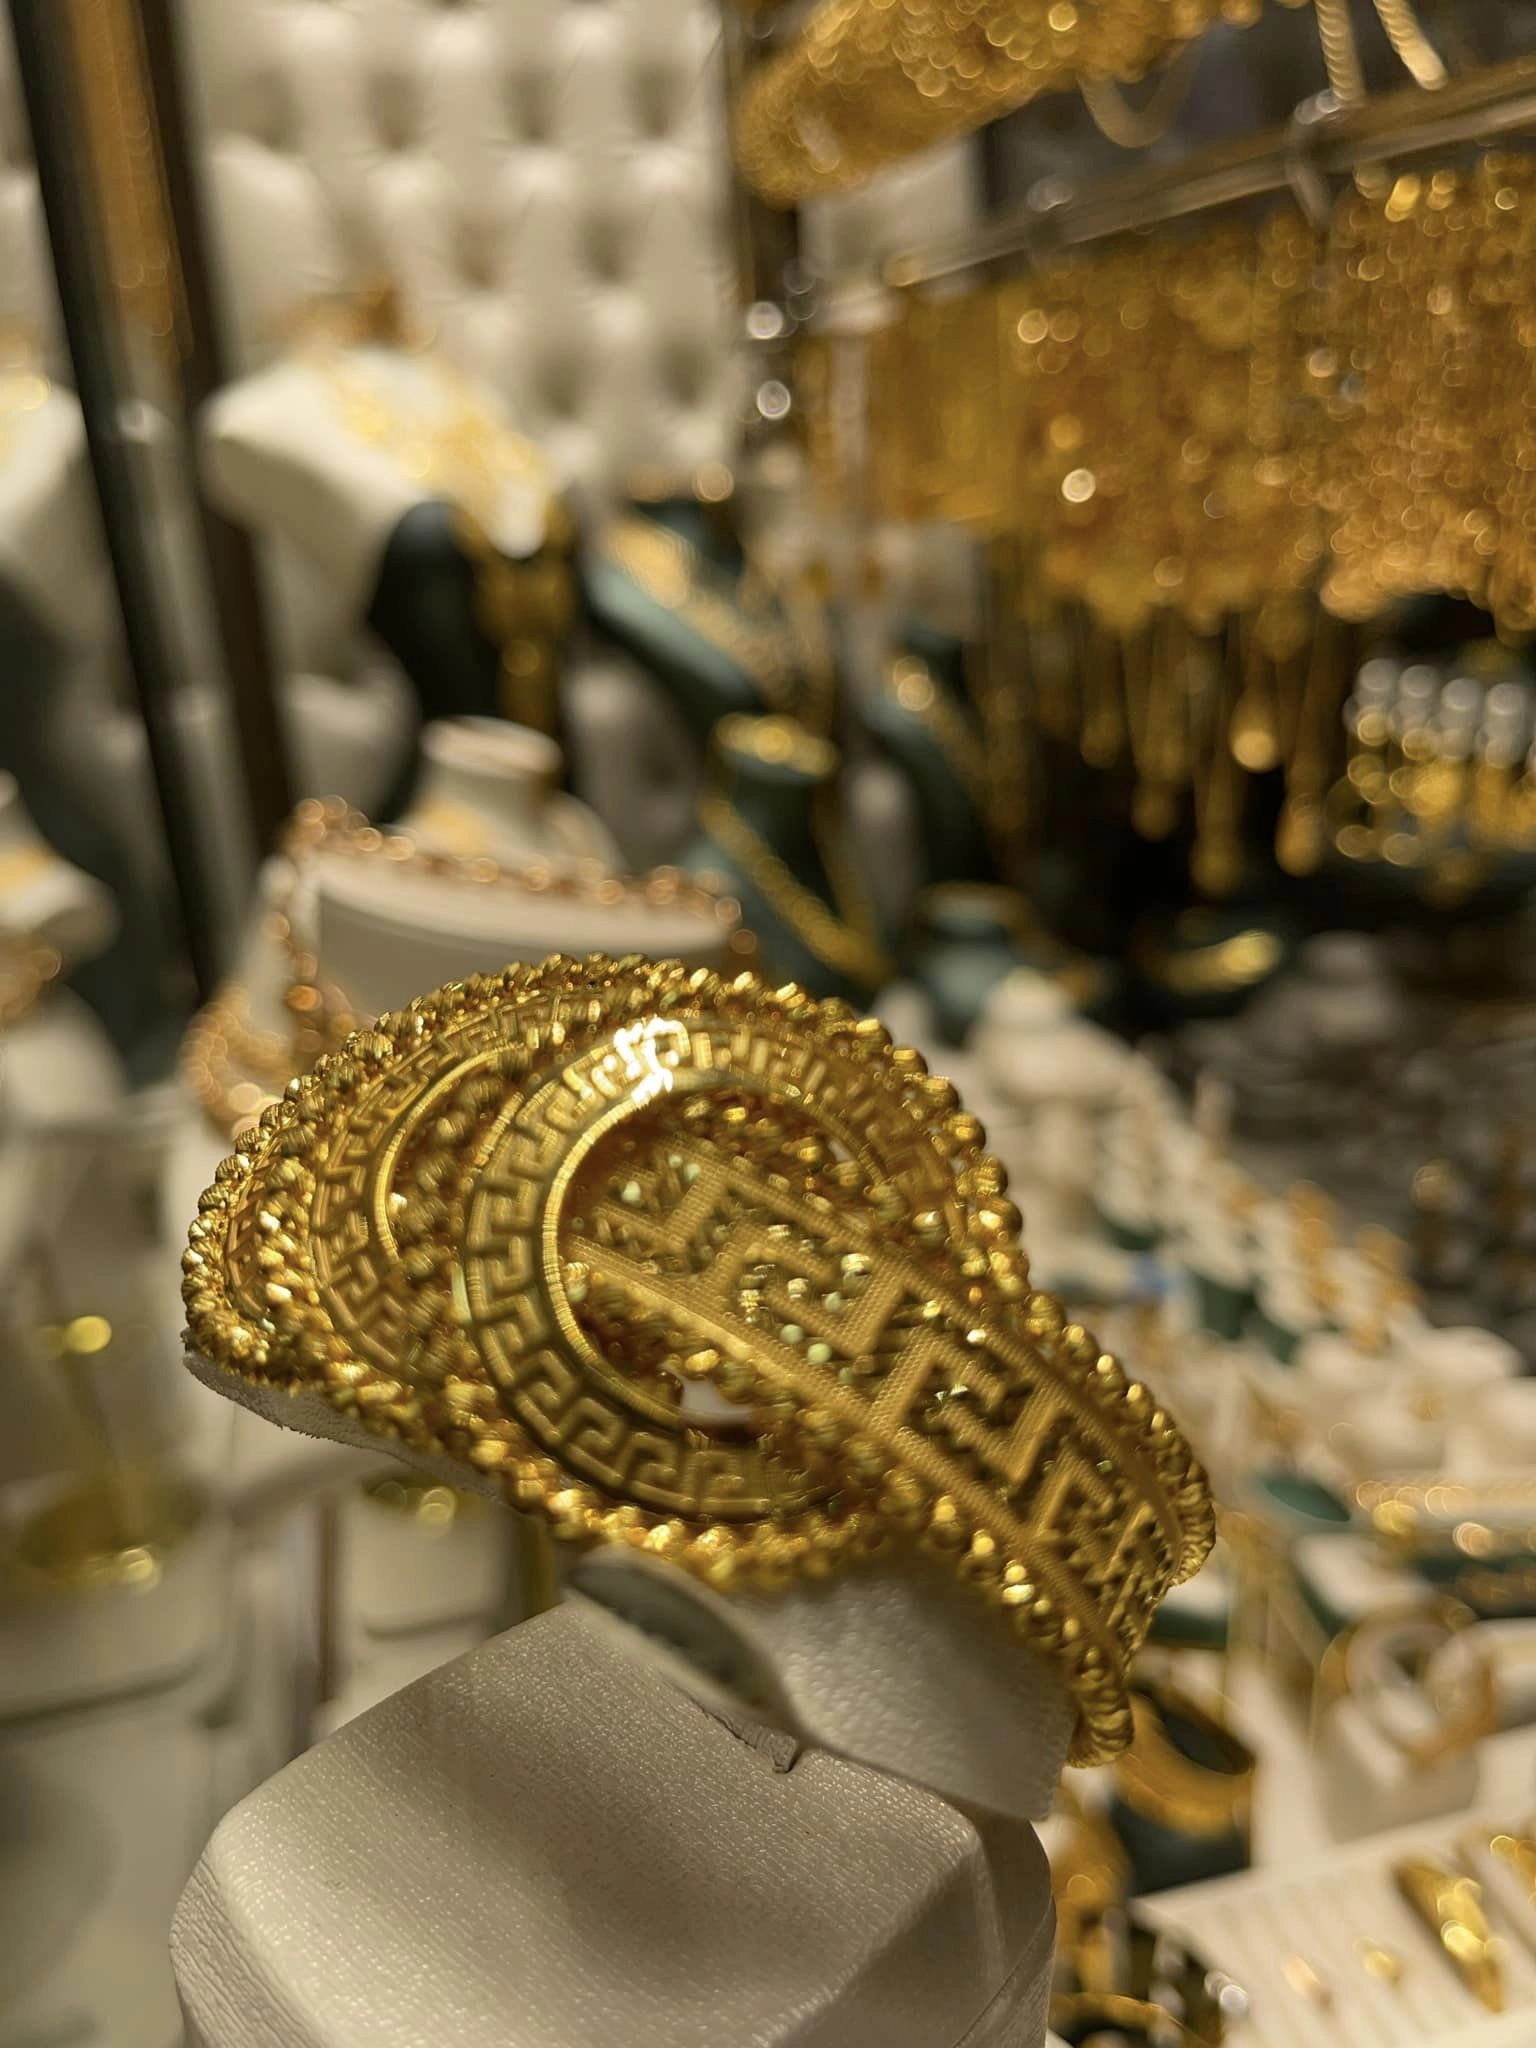 أصبحت شركة مجوهرات حنيفة إحدى أهم مصدري المصوغات الذهبية العرب من تركيا إلى الشرق الأوسط وأوروبا عبر شبكة من العملاء الممتدة في عدة دول كألمانيا وهولندا وبلجيكا وغيرها من الدول.